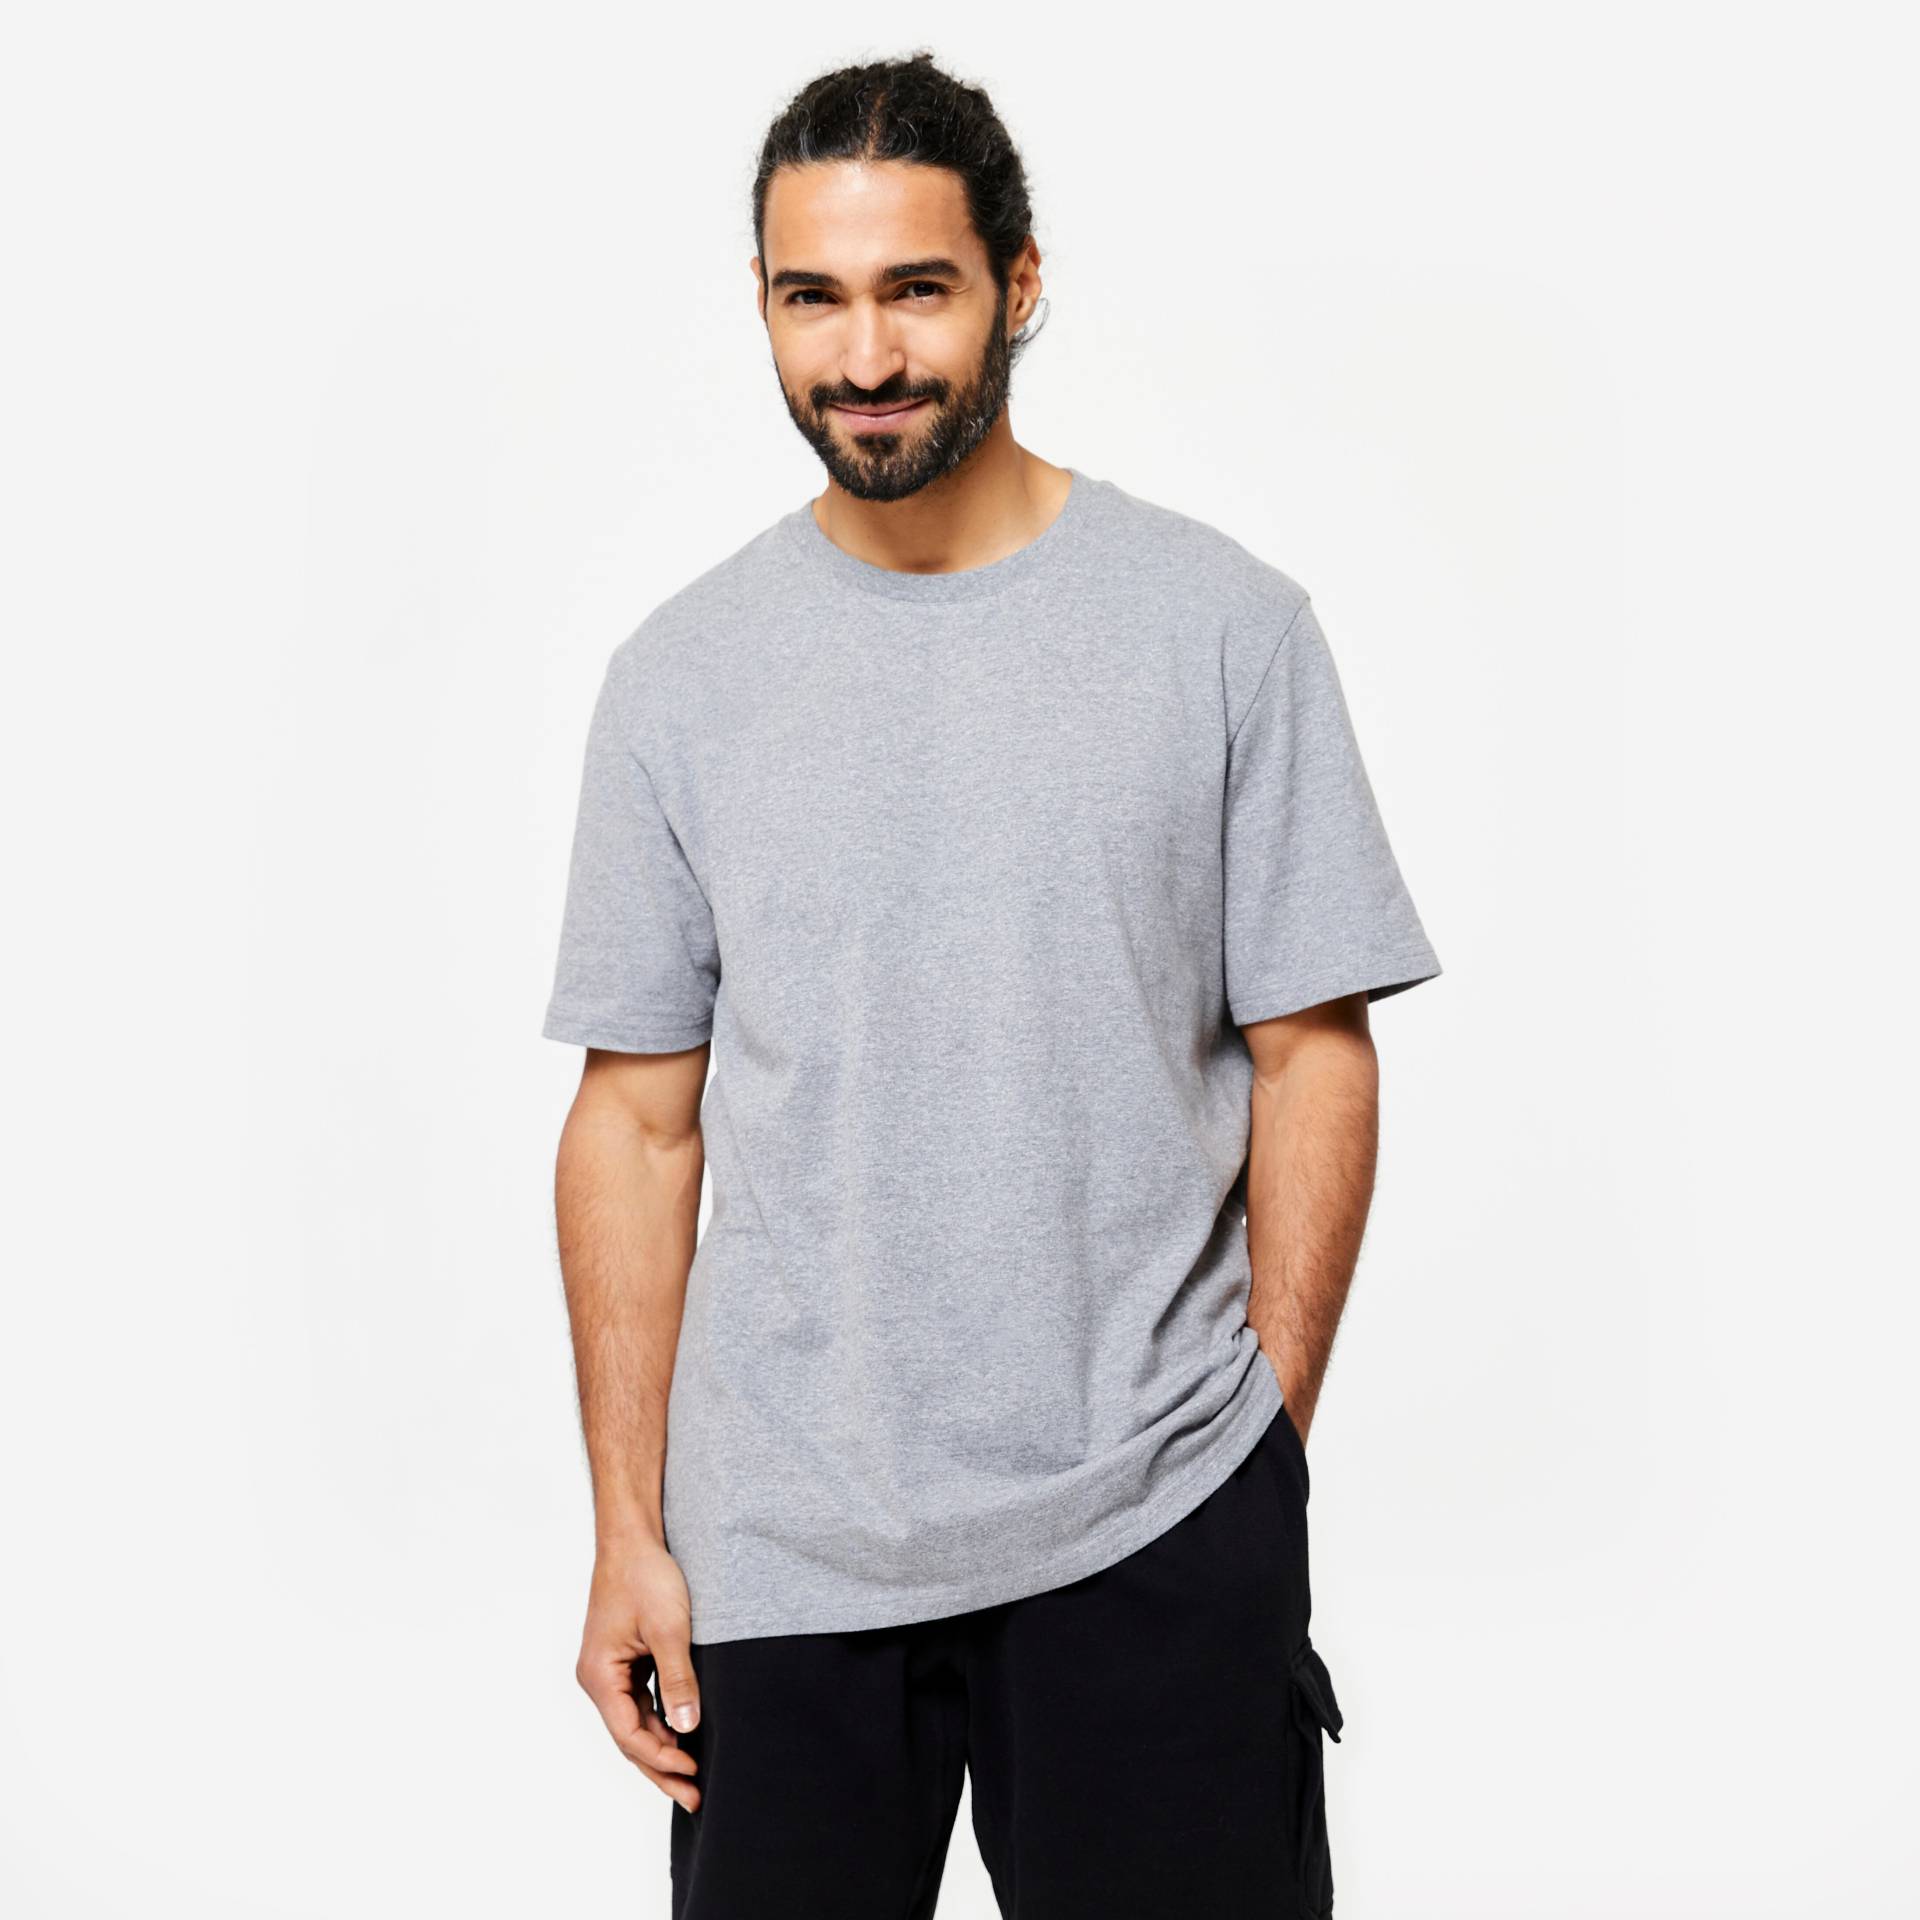 T-Shirt Herren - Essentials 500 hellgrau von Domyos